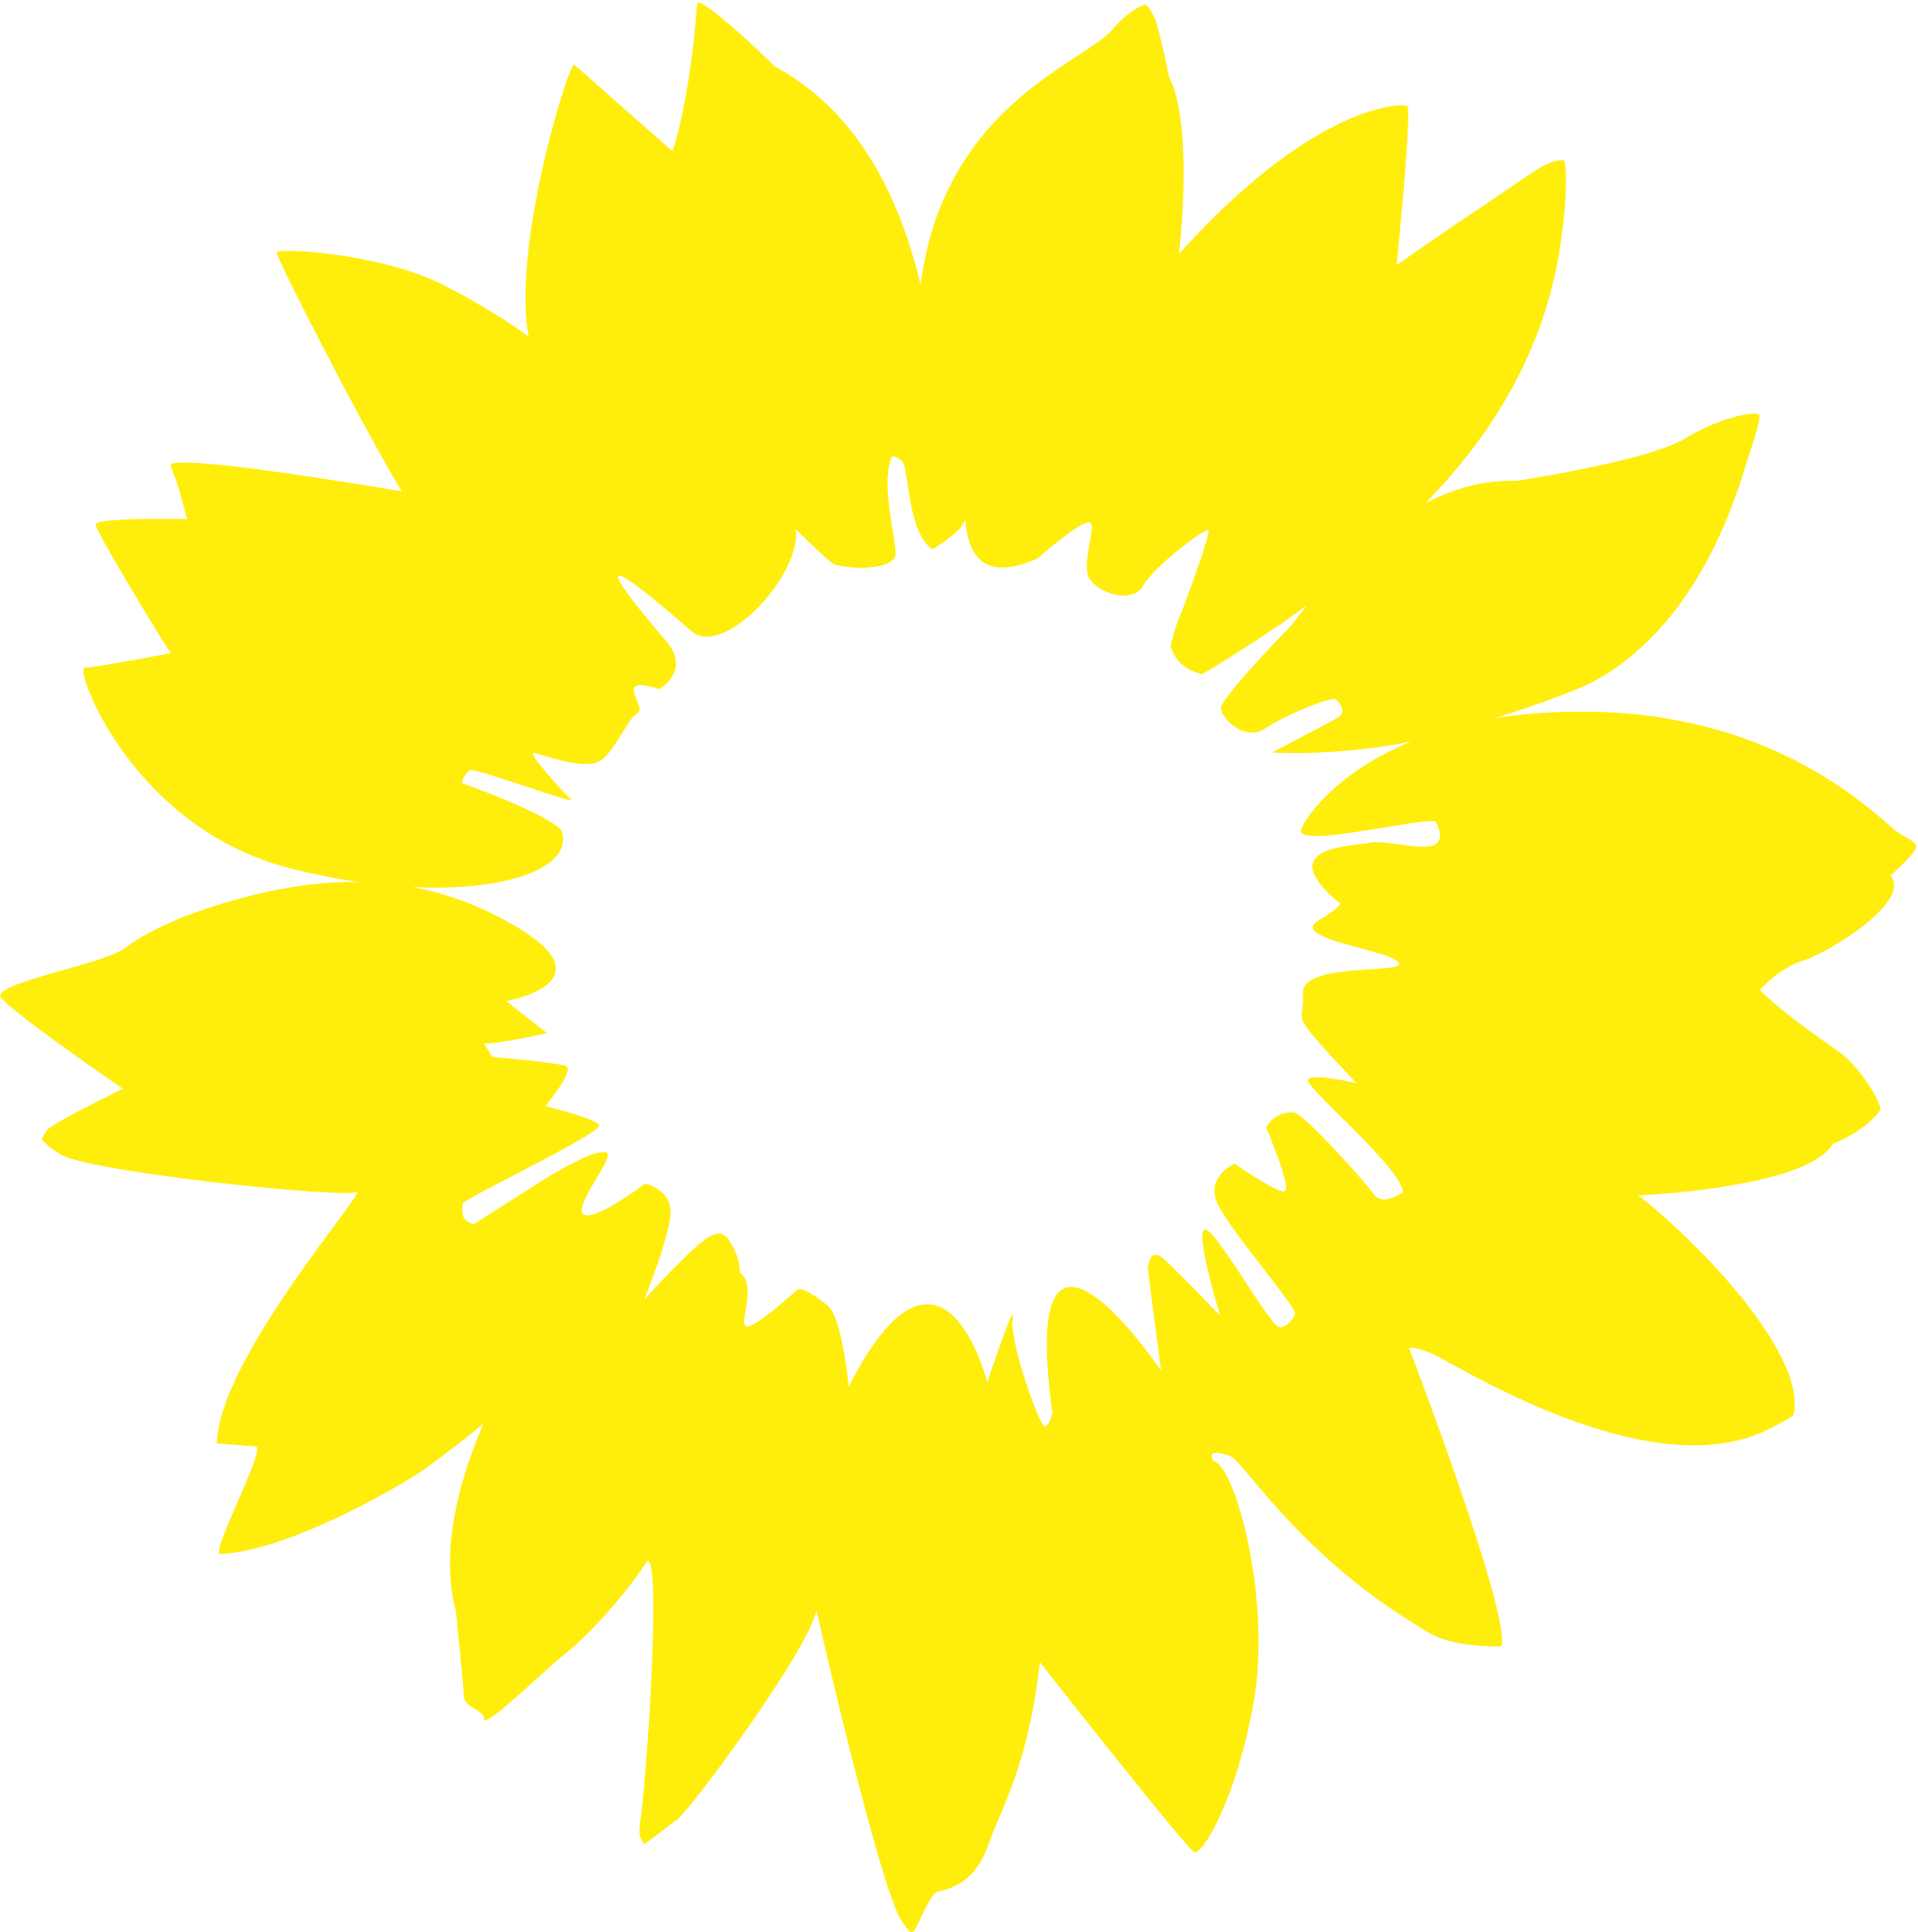 Sonnenblume mit den Buchstaben FJ in der Mitte